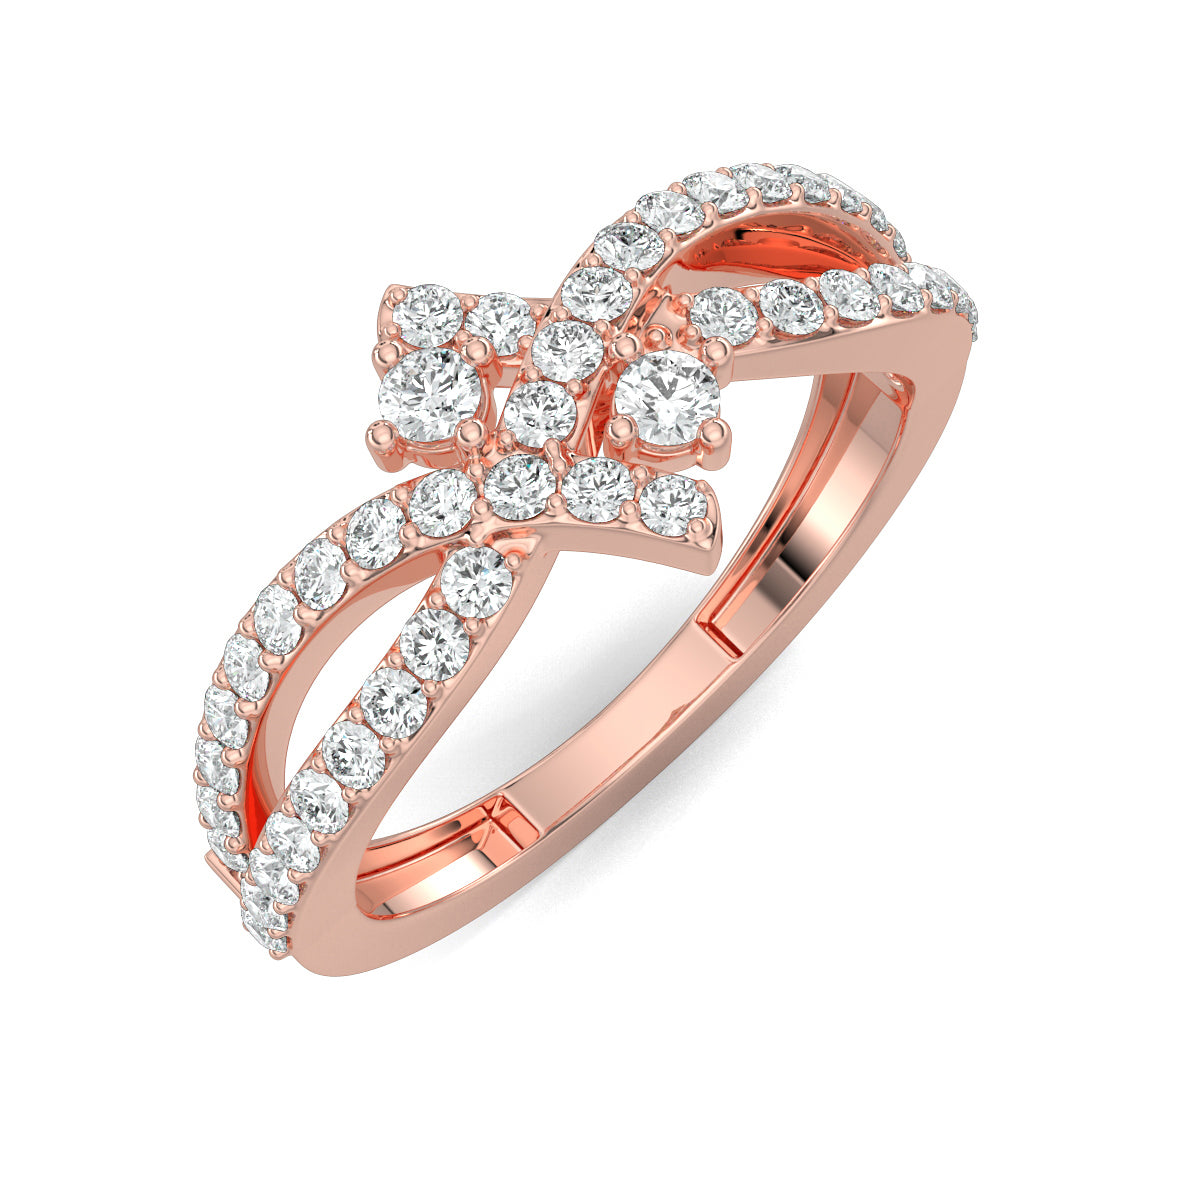 Rose Gold, Diamond Ring, Nebula twist diamond ring, celestial diamond ring, split shank band, natural diamonds, lab-grown diamonds, contemporary jewelry